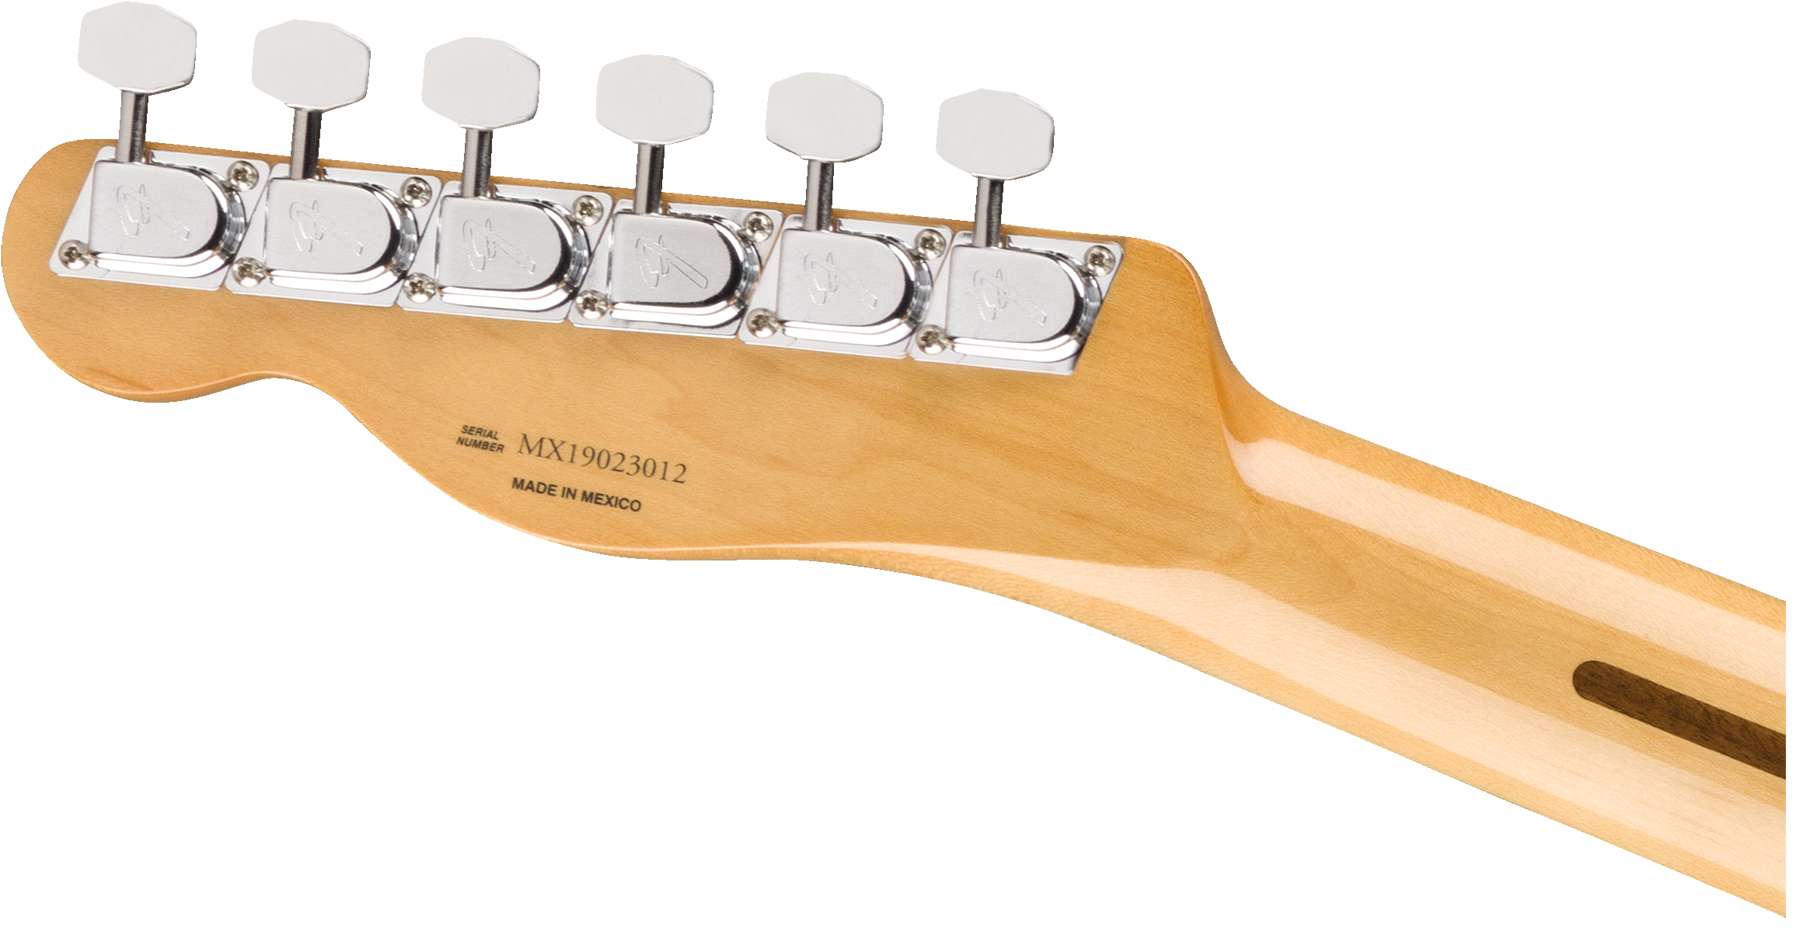 Fender Tele 70s Custom Vintera Vintage Mex Pf - Sonic Blue - Guitarra eléctrica con forma de tel - Variation 2